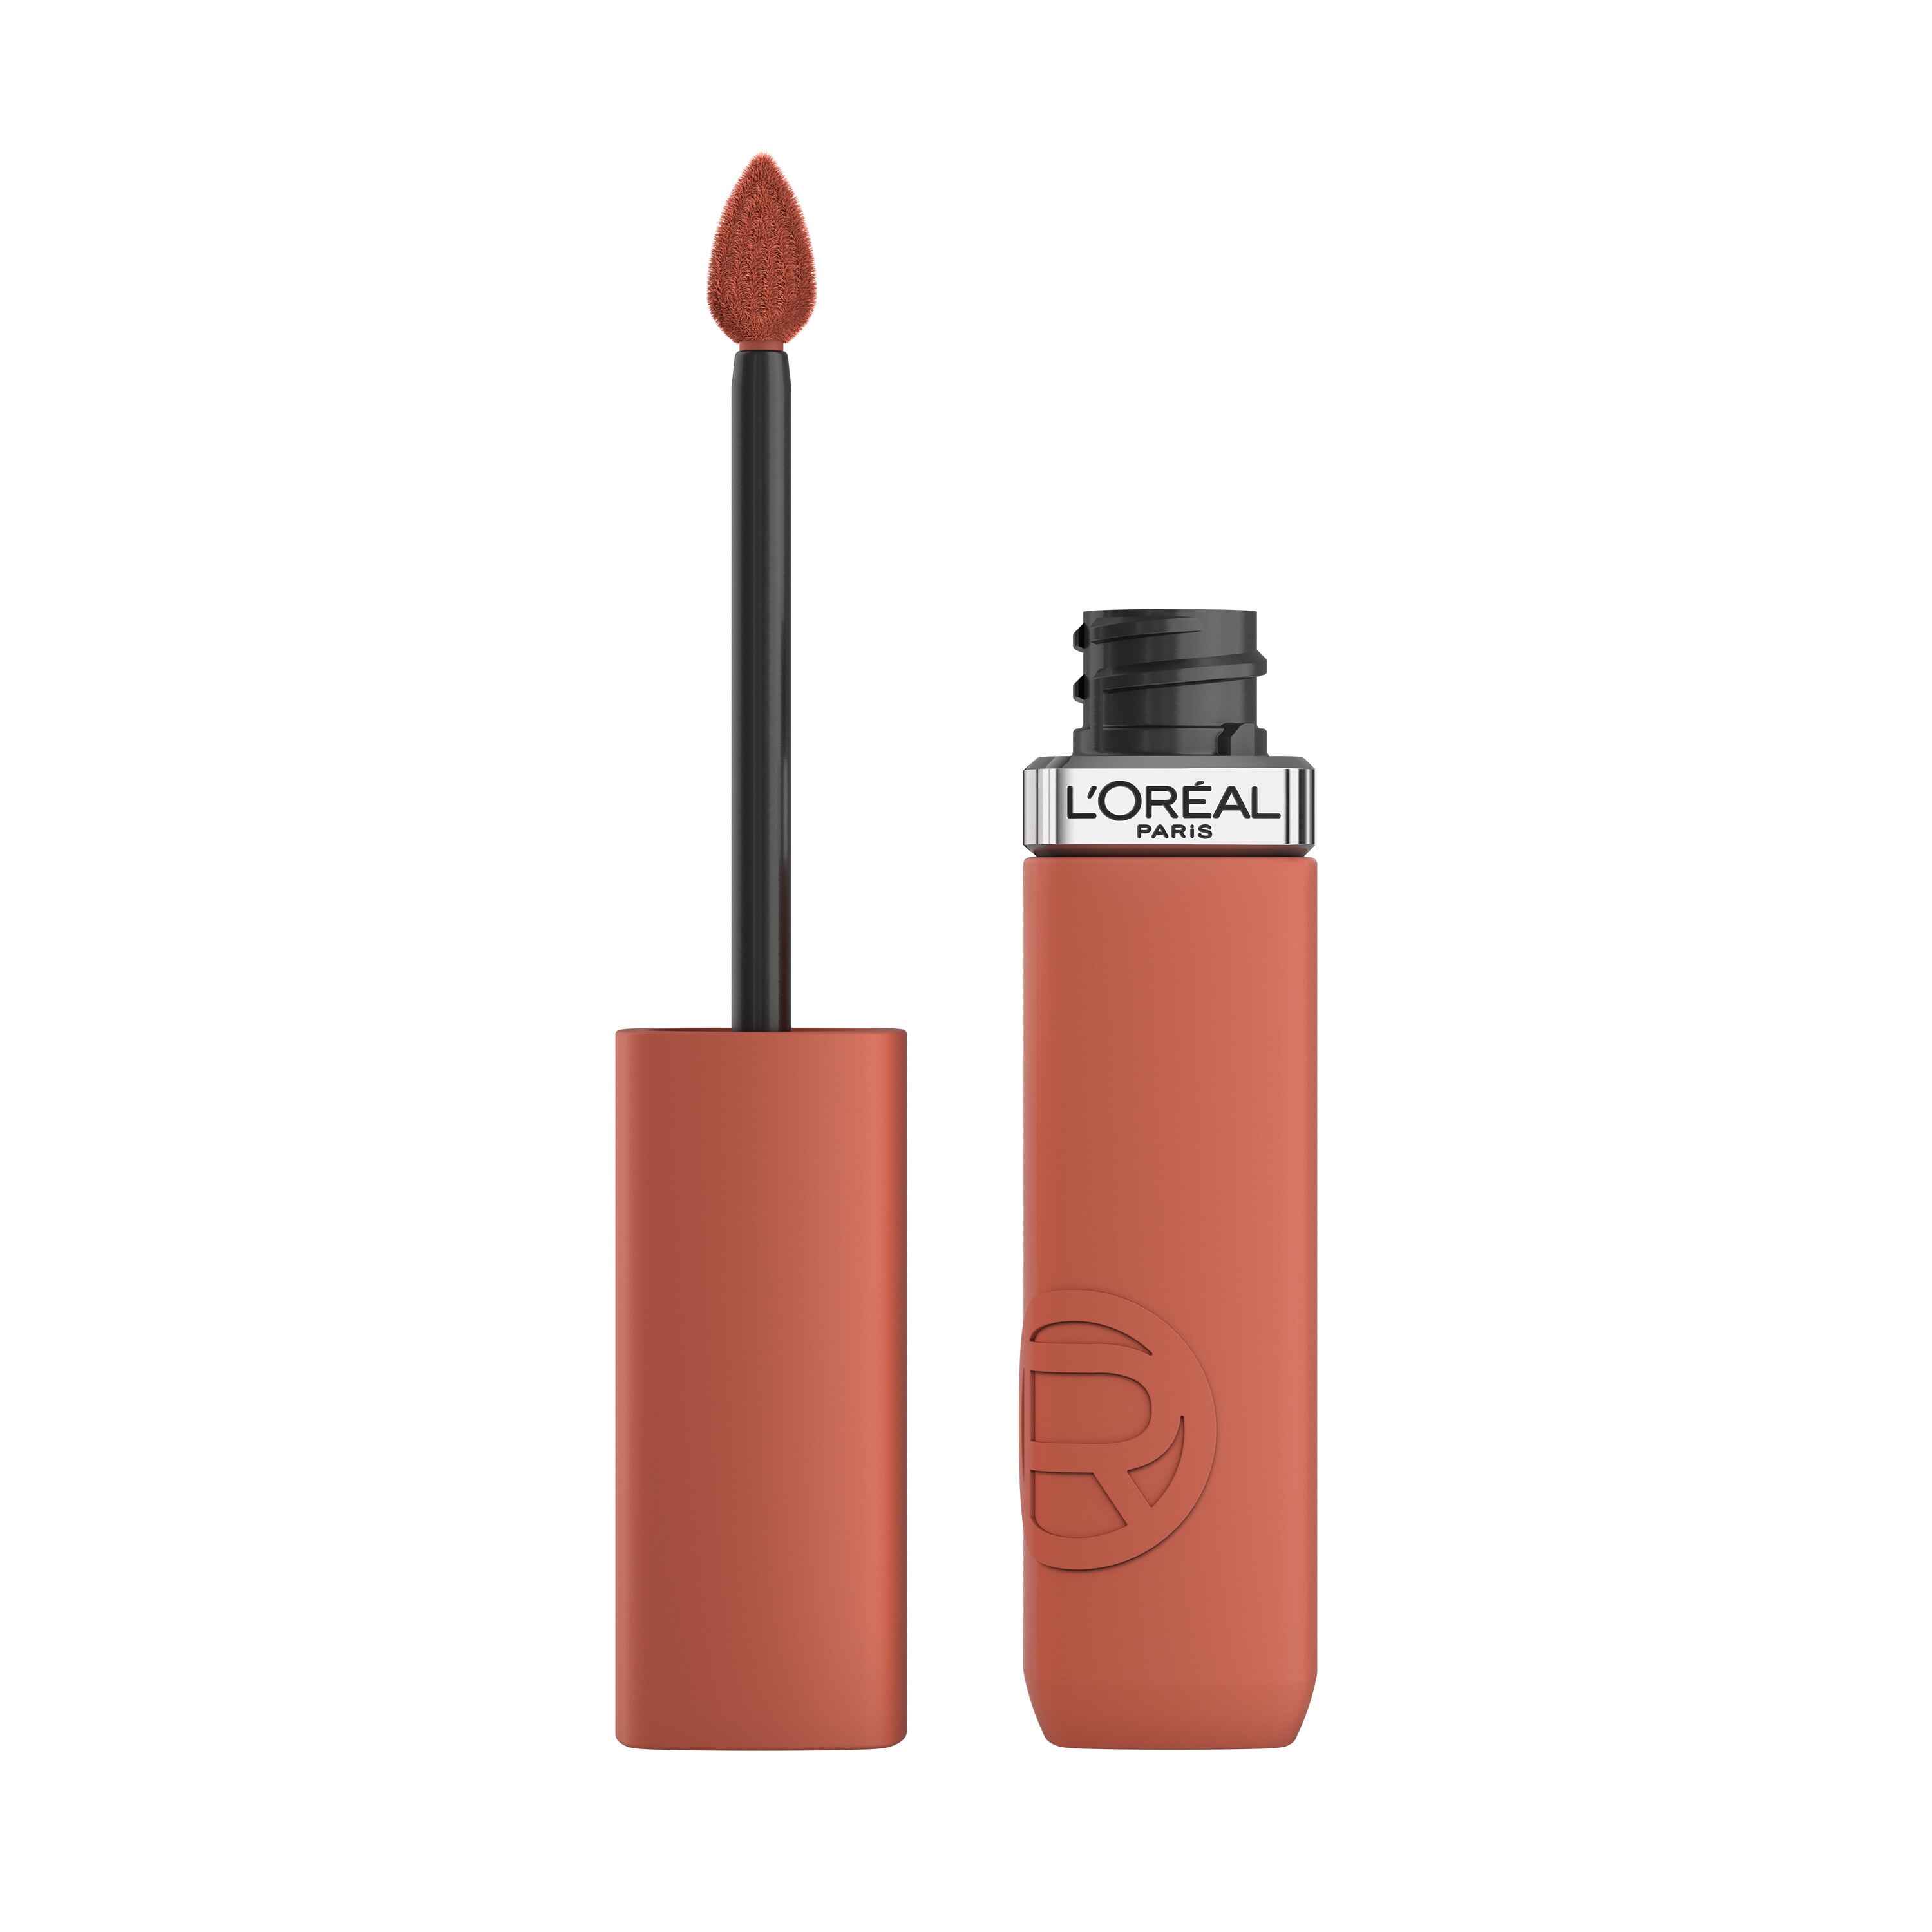 L'Oreal Paris Infallible Matte Resistance Liquid Lipstick, Snooze Your Alarm, 0.17 Fl Oz , CVS